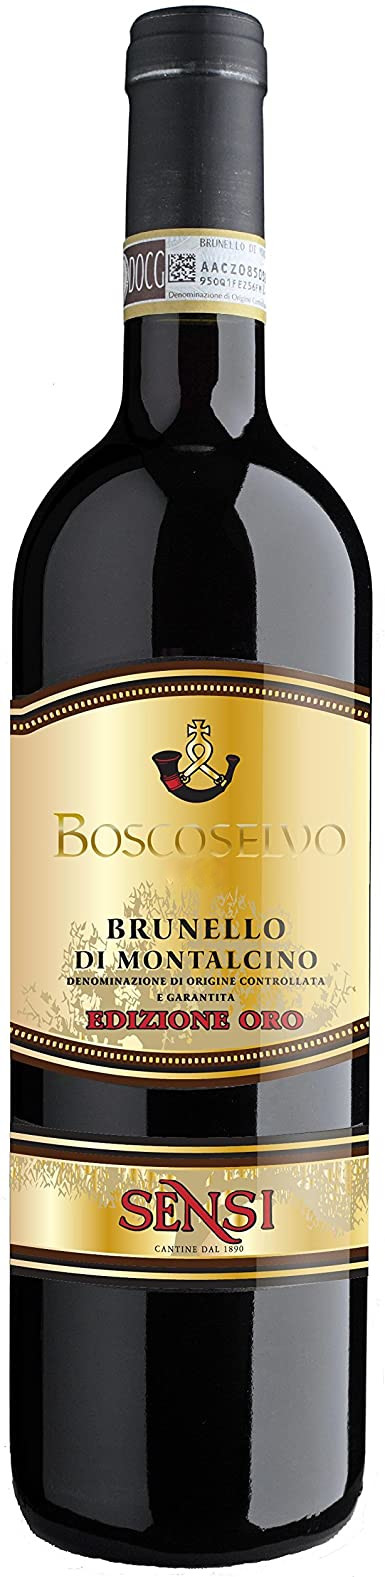 Boscoselvo Brunello di Montalcino DOCG '11 0.75l